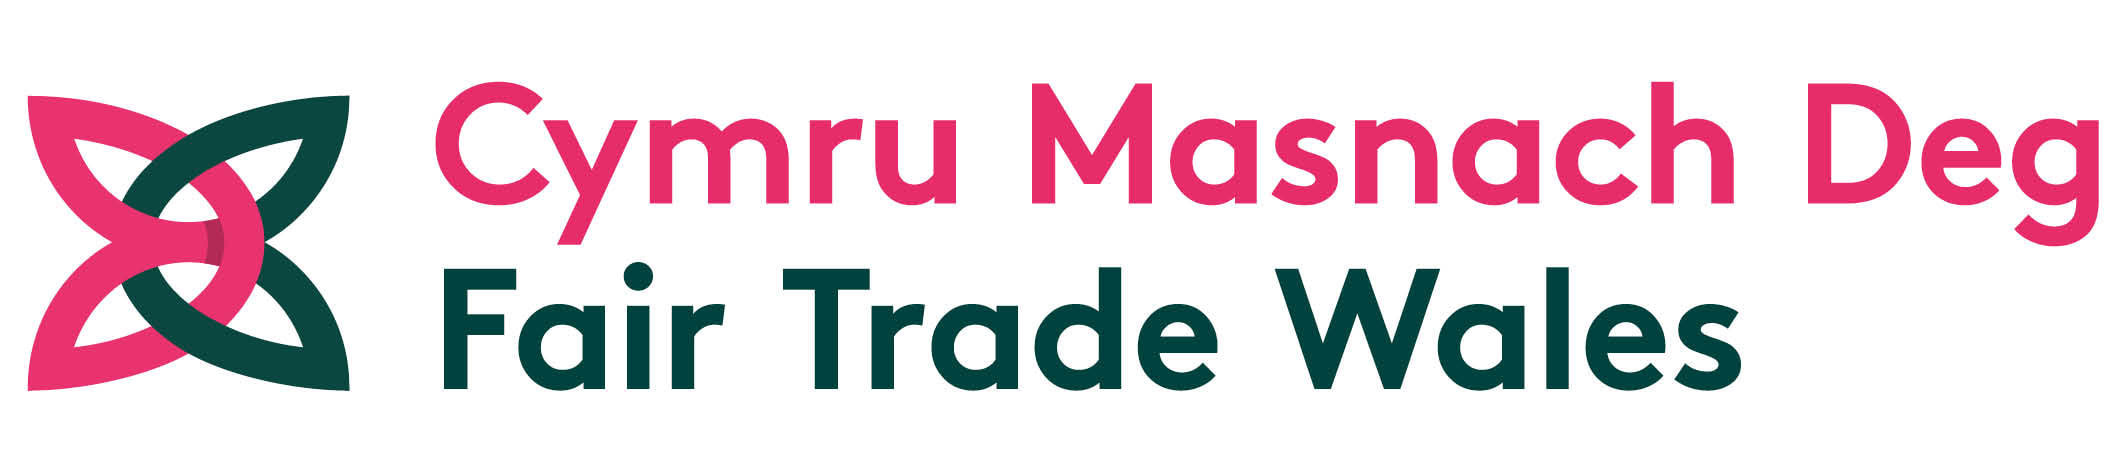 Fair Trade Wales logo